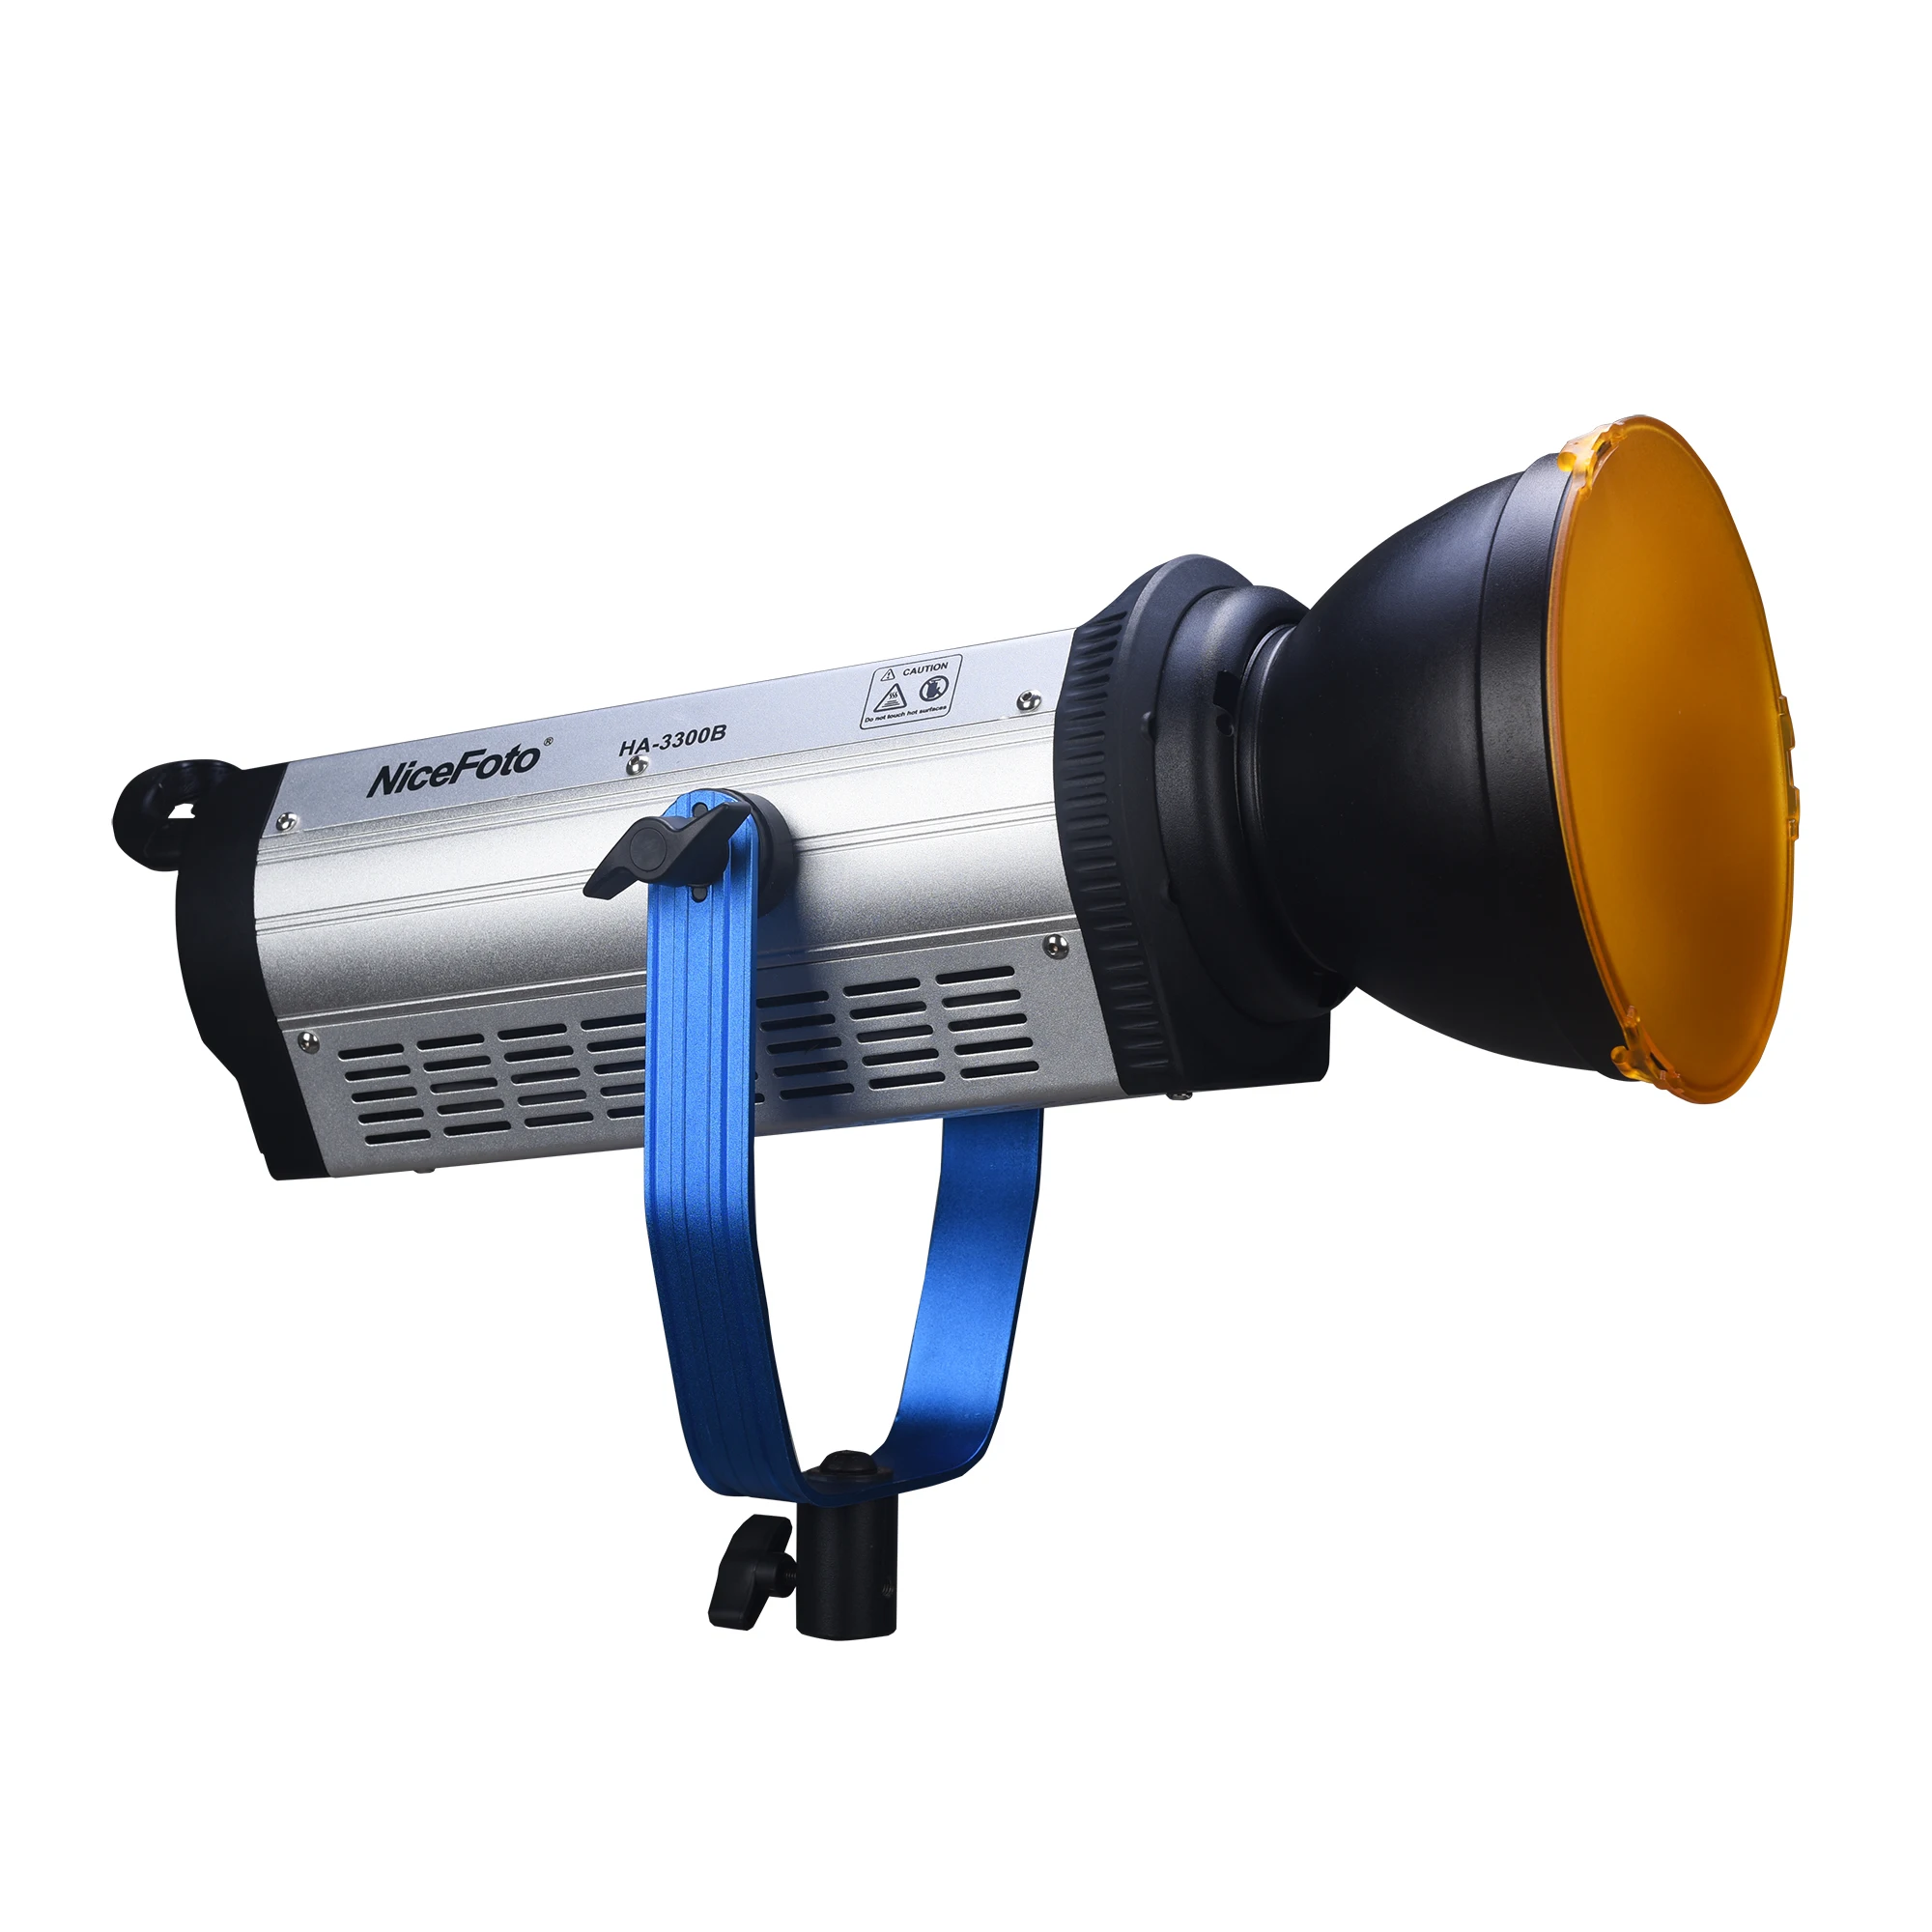 NiceFoto HA-3300B 330W Дневной светильник COB светодиодный светильник 5500K студийное освещение для фотографии светильник видео светильник с 2,4G пульт дистанционного управления